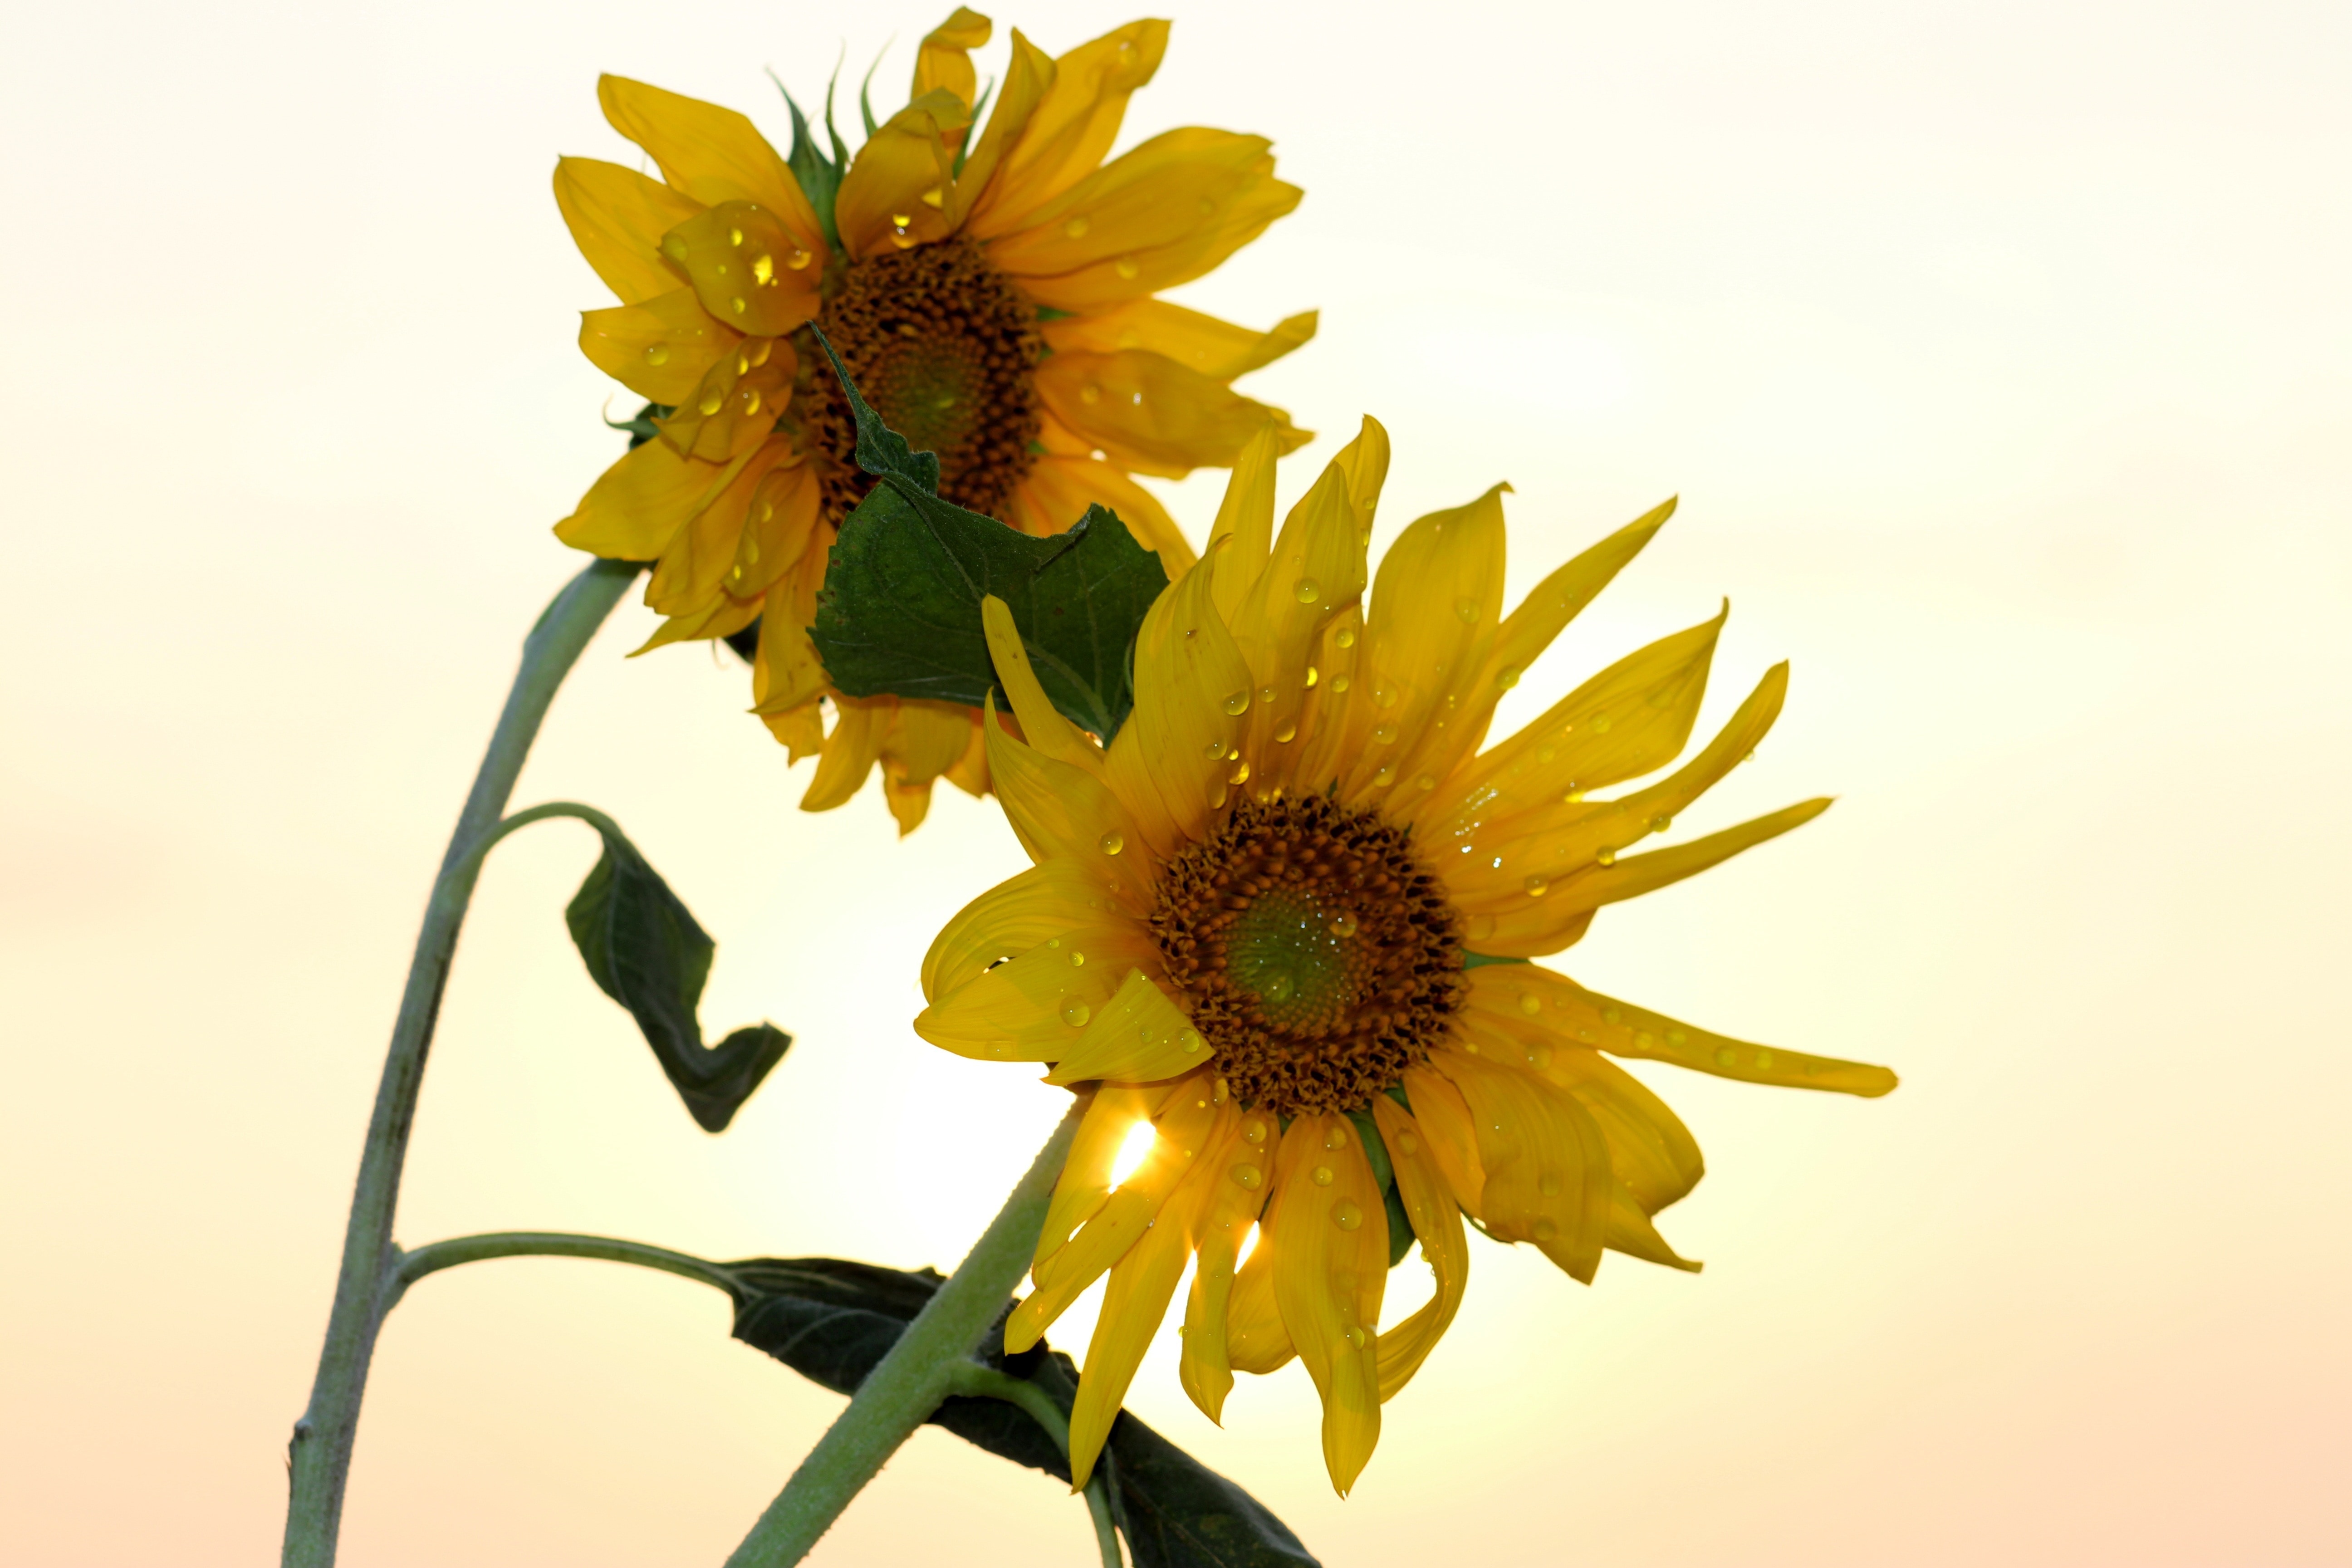 2 yellow sunflower